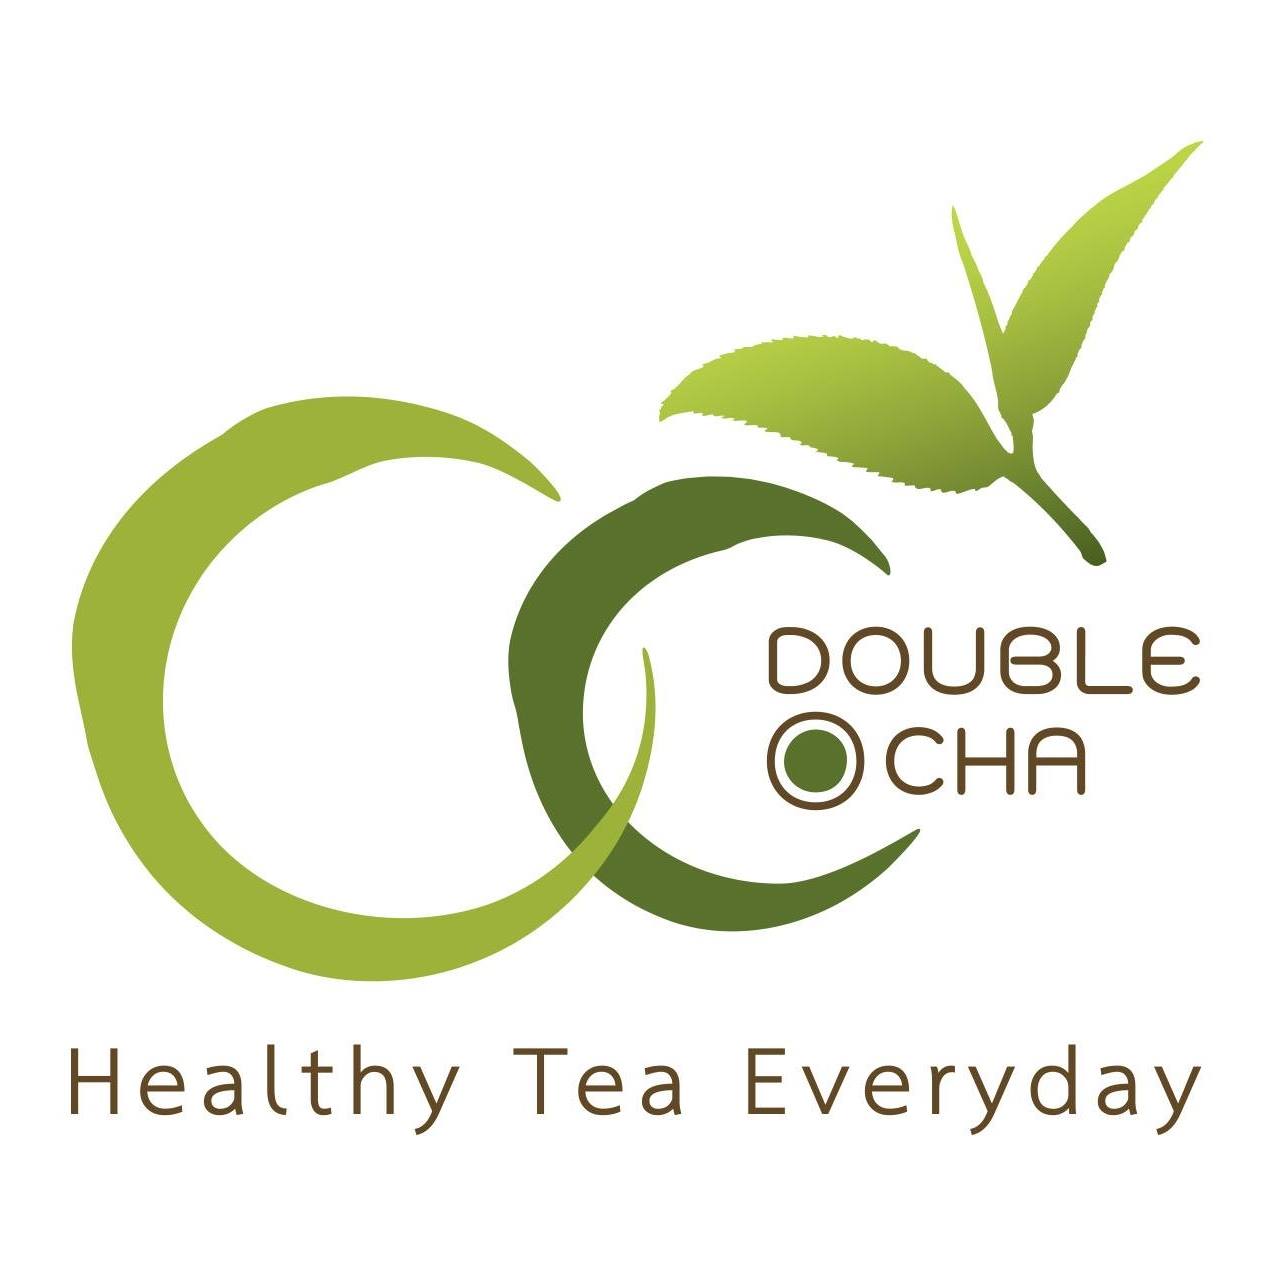 Double O Cha ดับเบิ้ลโอชา ชานมไต้หวัน ชาเพื่อสุขภาพ เครื่องดื่มสูตรคีโต